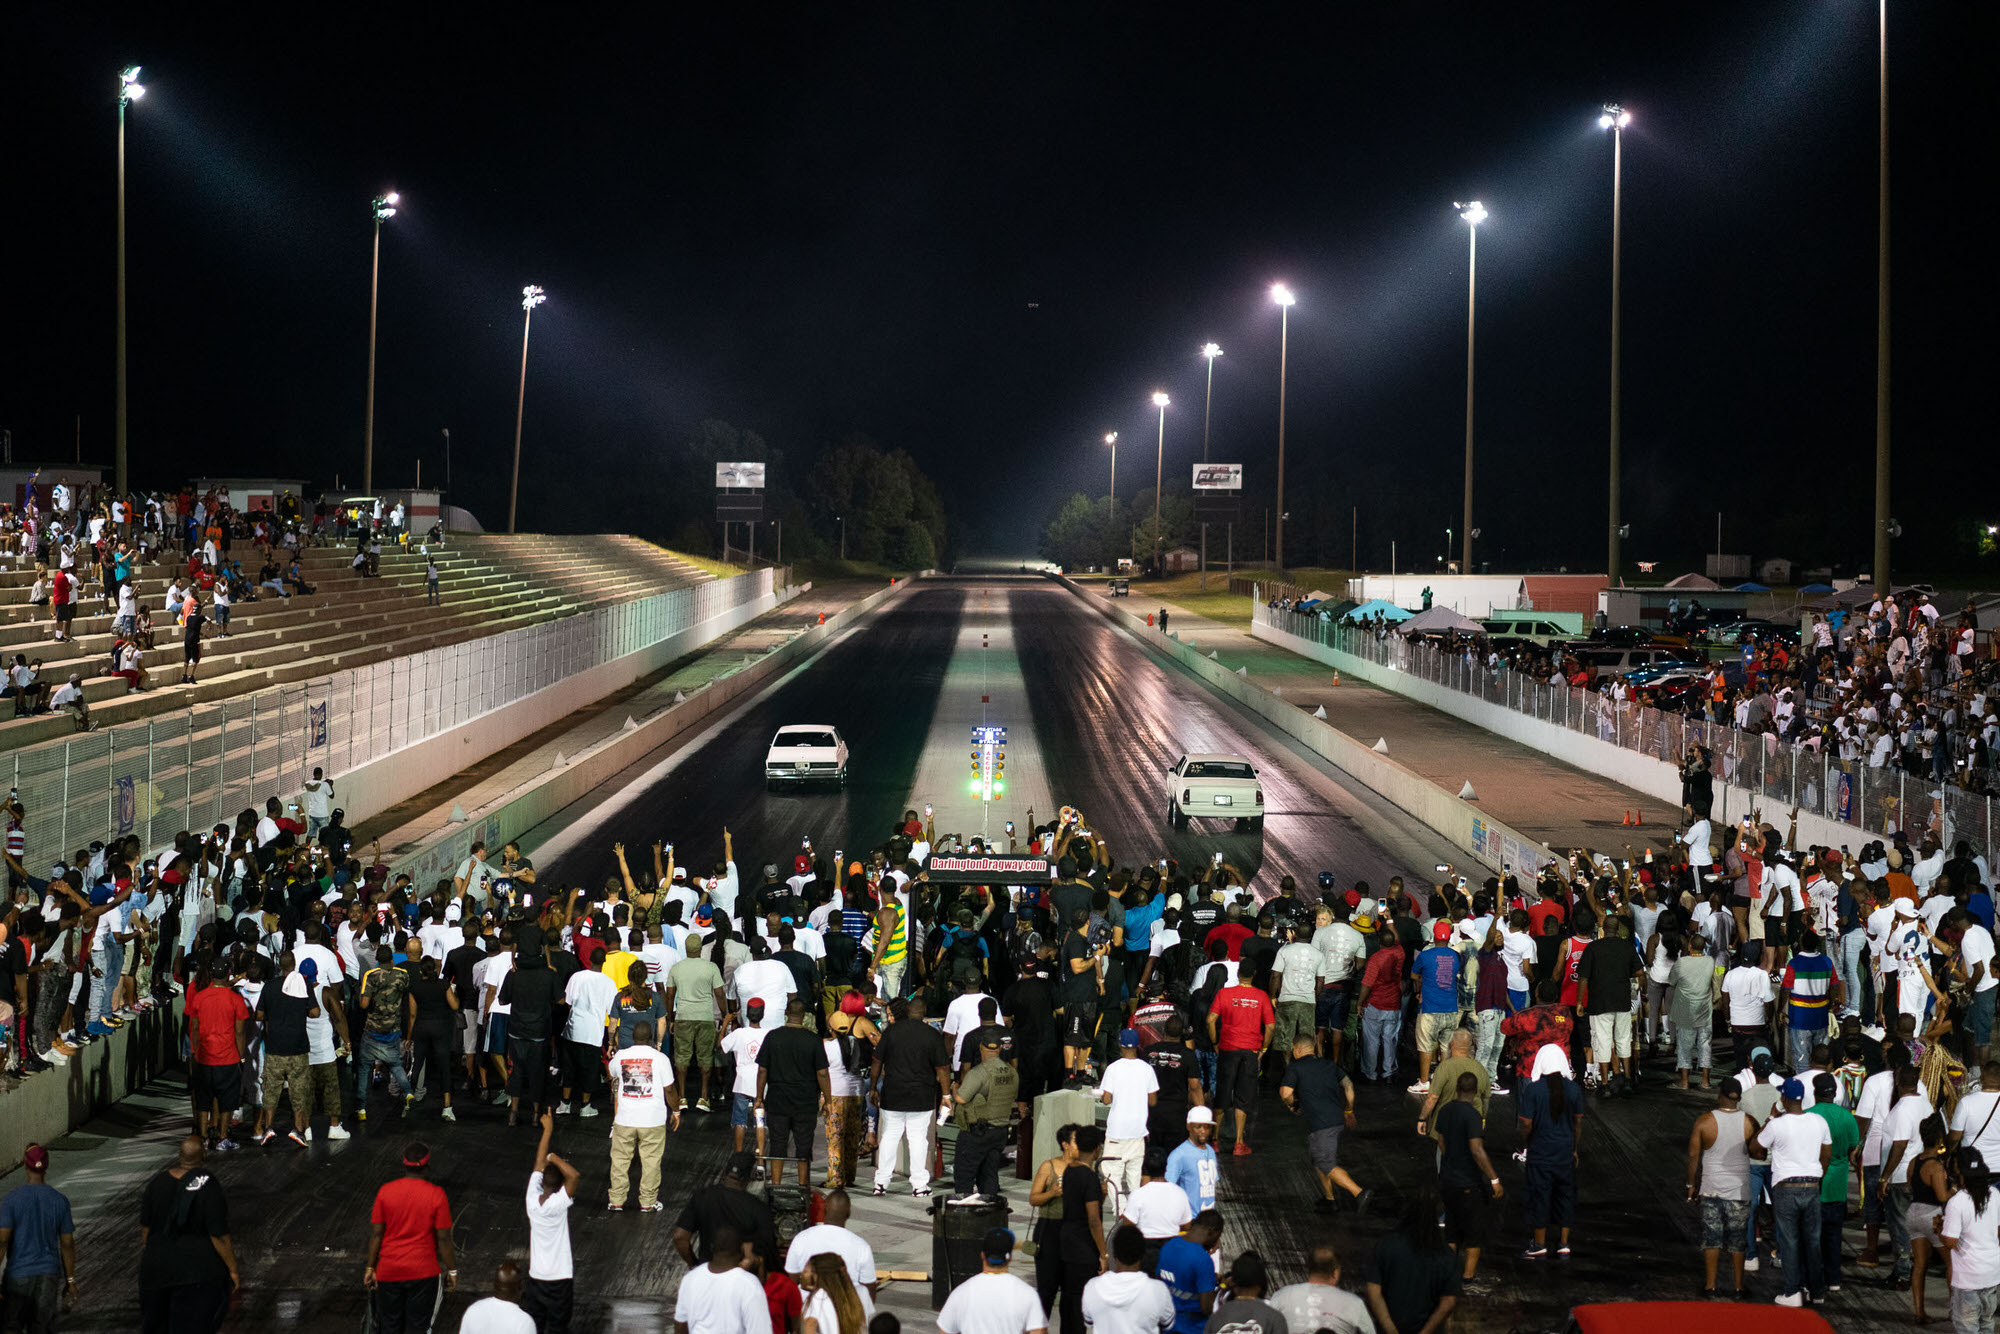 DONK racing at night at Darlington Drawgway, South Carolina